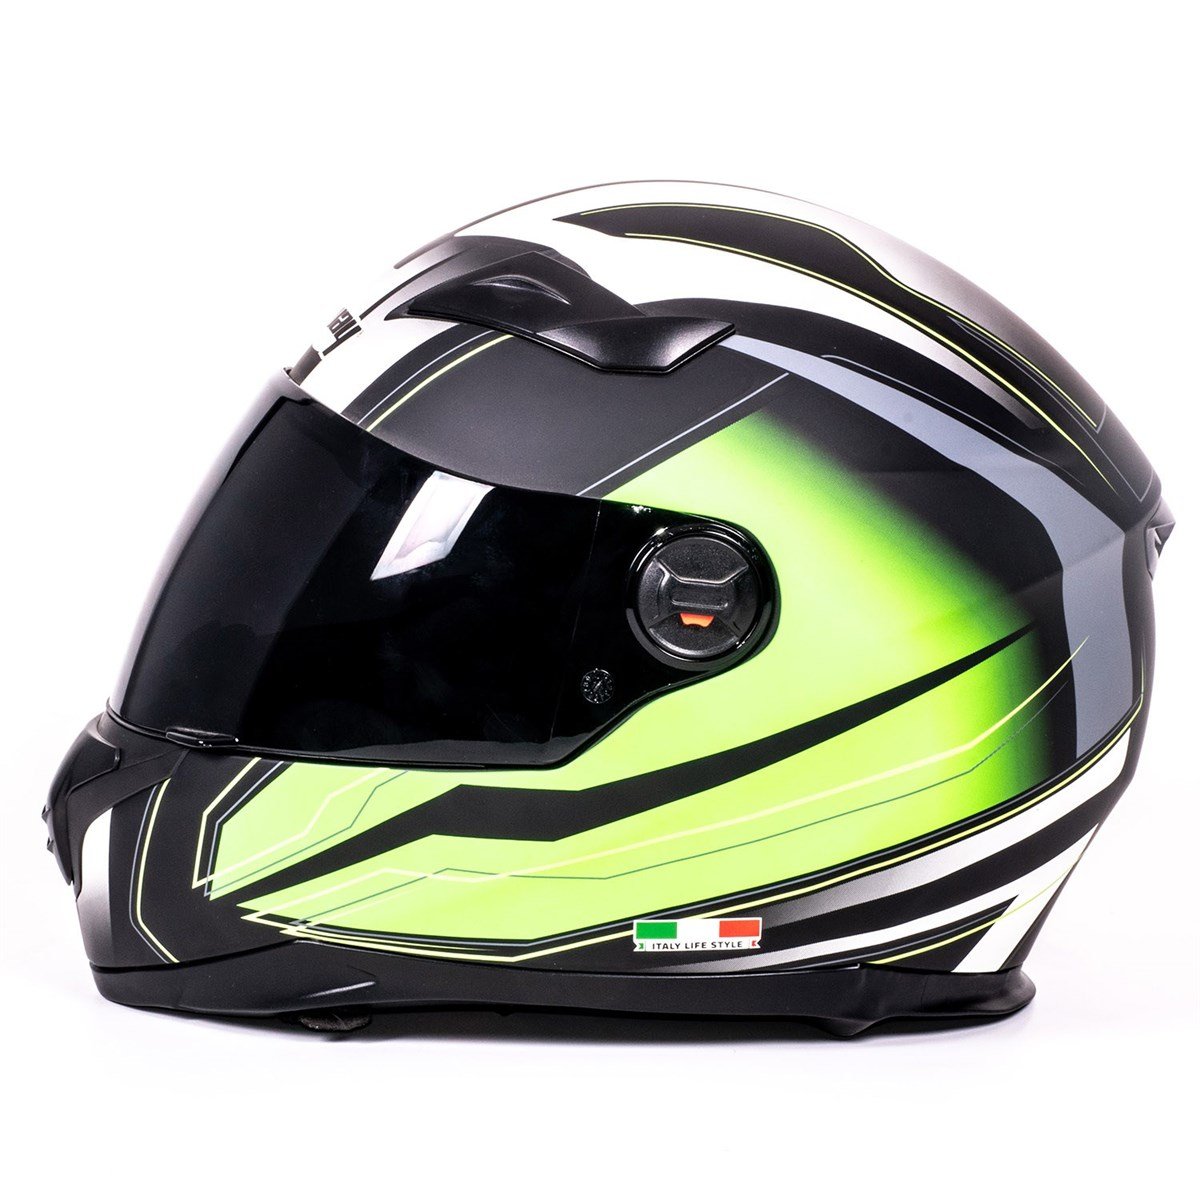 Sway 812 Full Face Motosiklet Kaski | Hızlı Teslimat ve Uygun Fiyat  Seçenekleri ile Vipmoto'da!